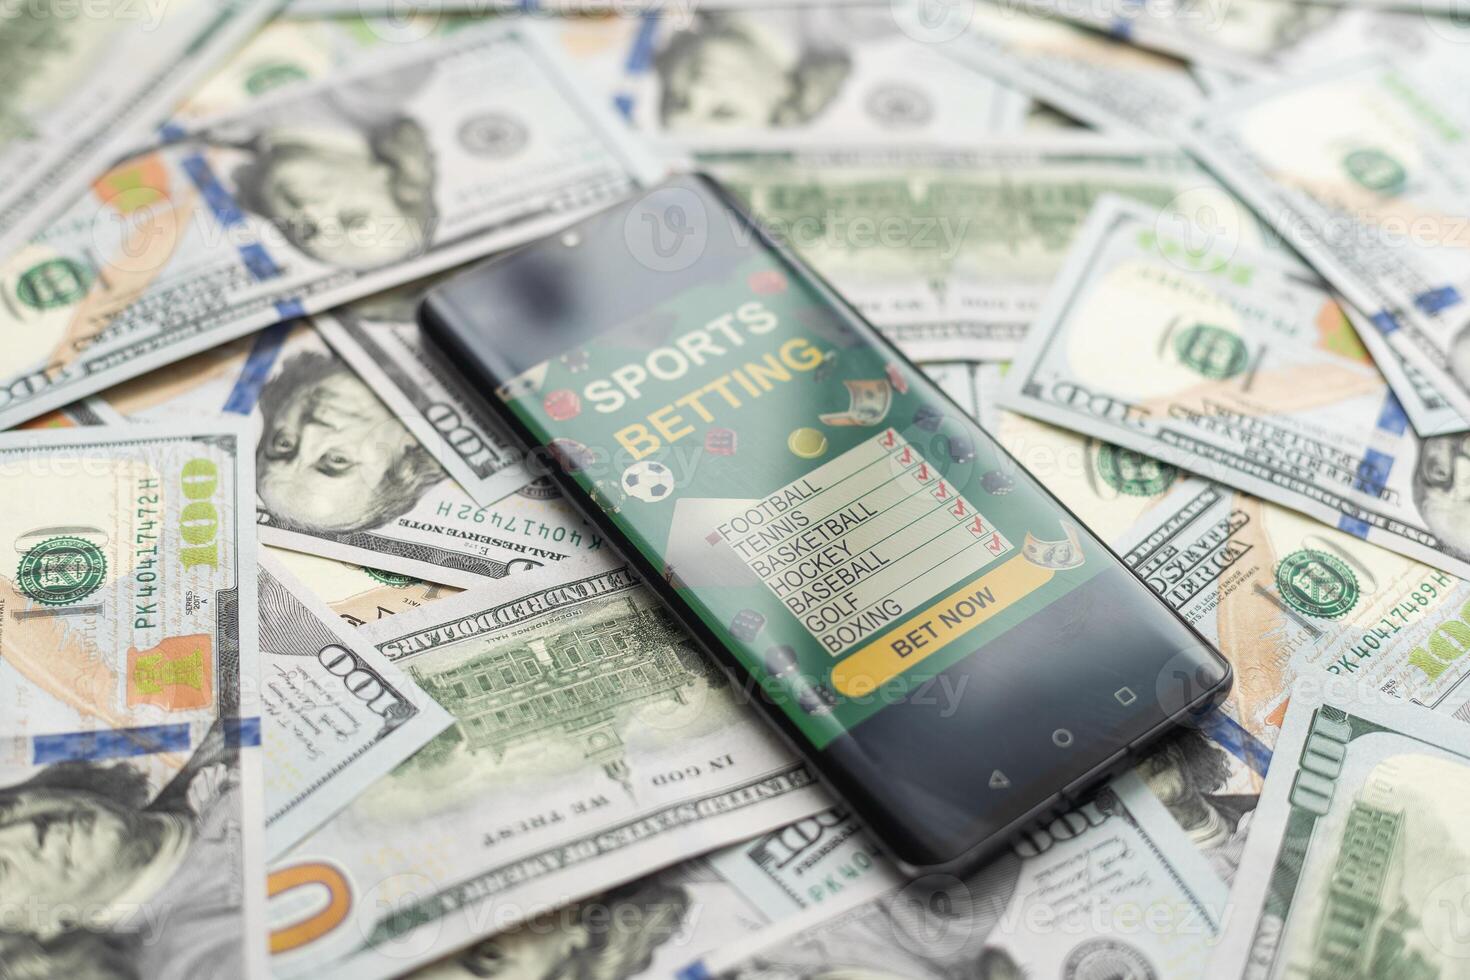 smartphone med hasardspel mobil Ansökan med pengar närbild. sport och vadhållning begrepp foto